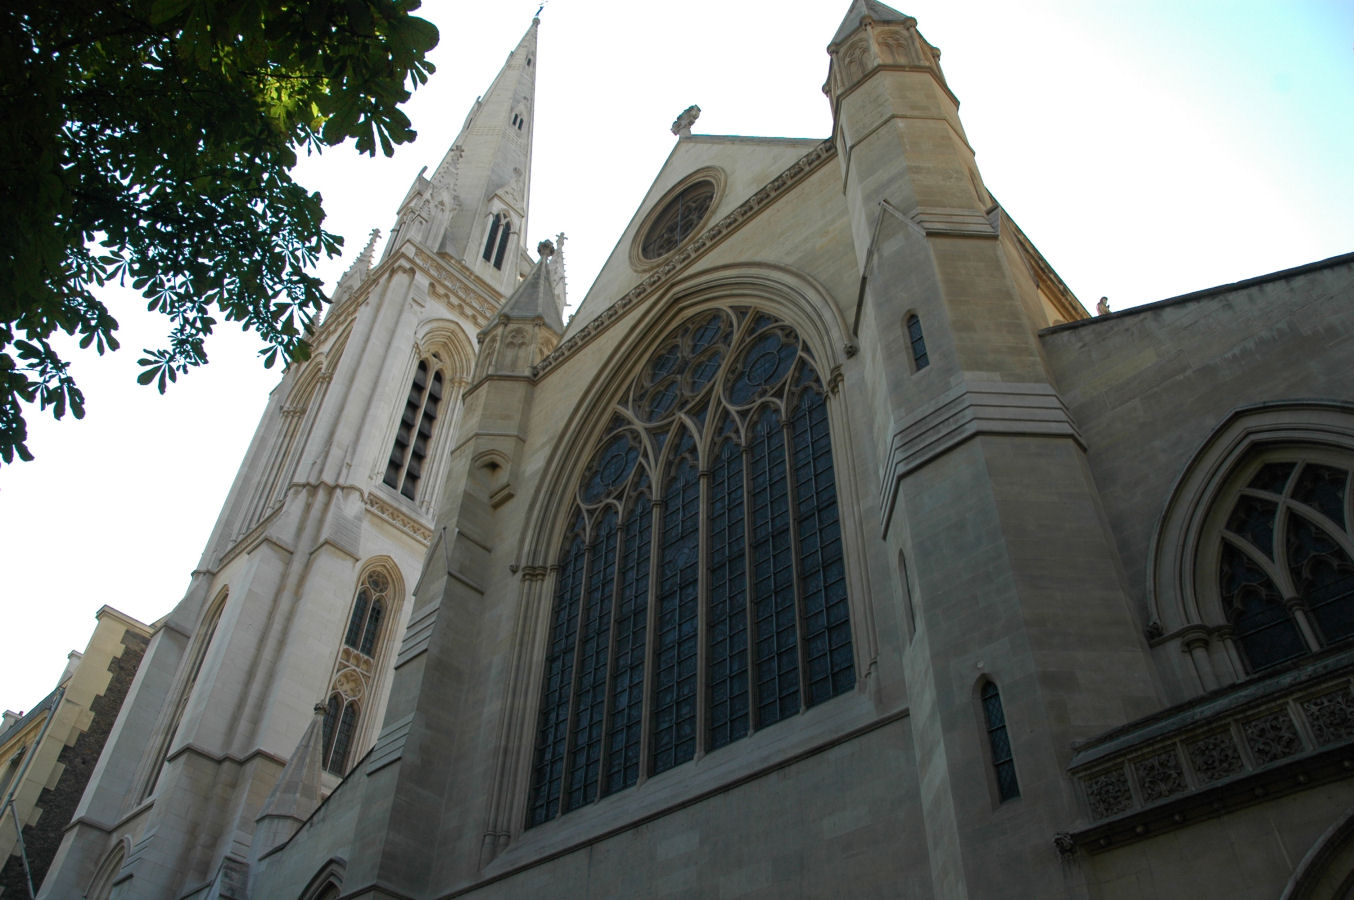  katedra Św. Trójcy w Paryżu